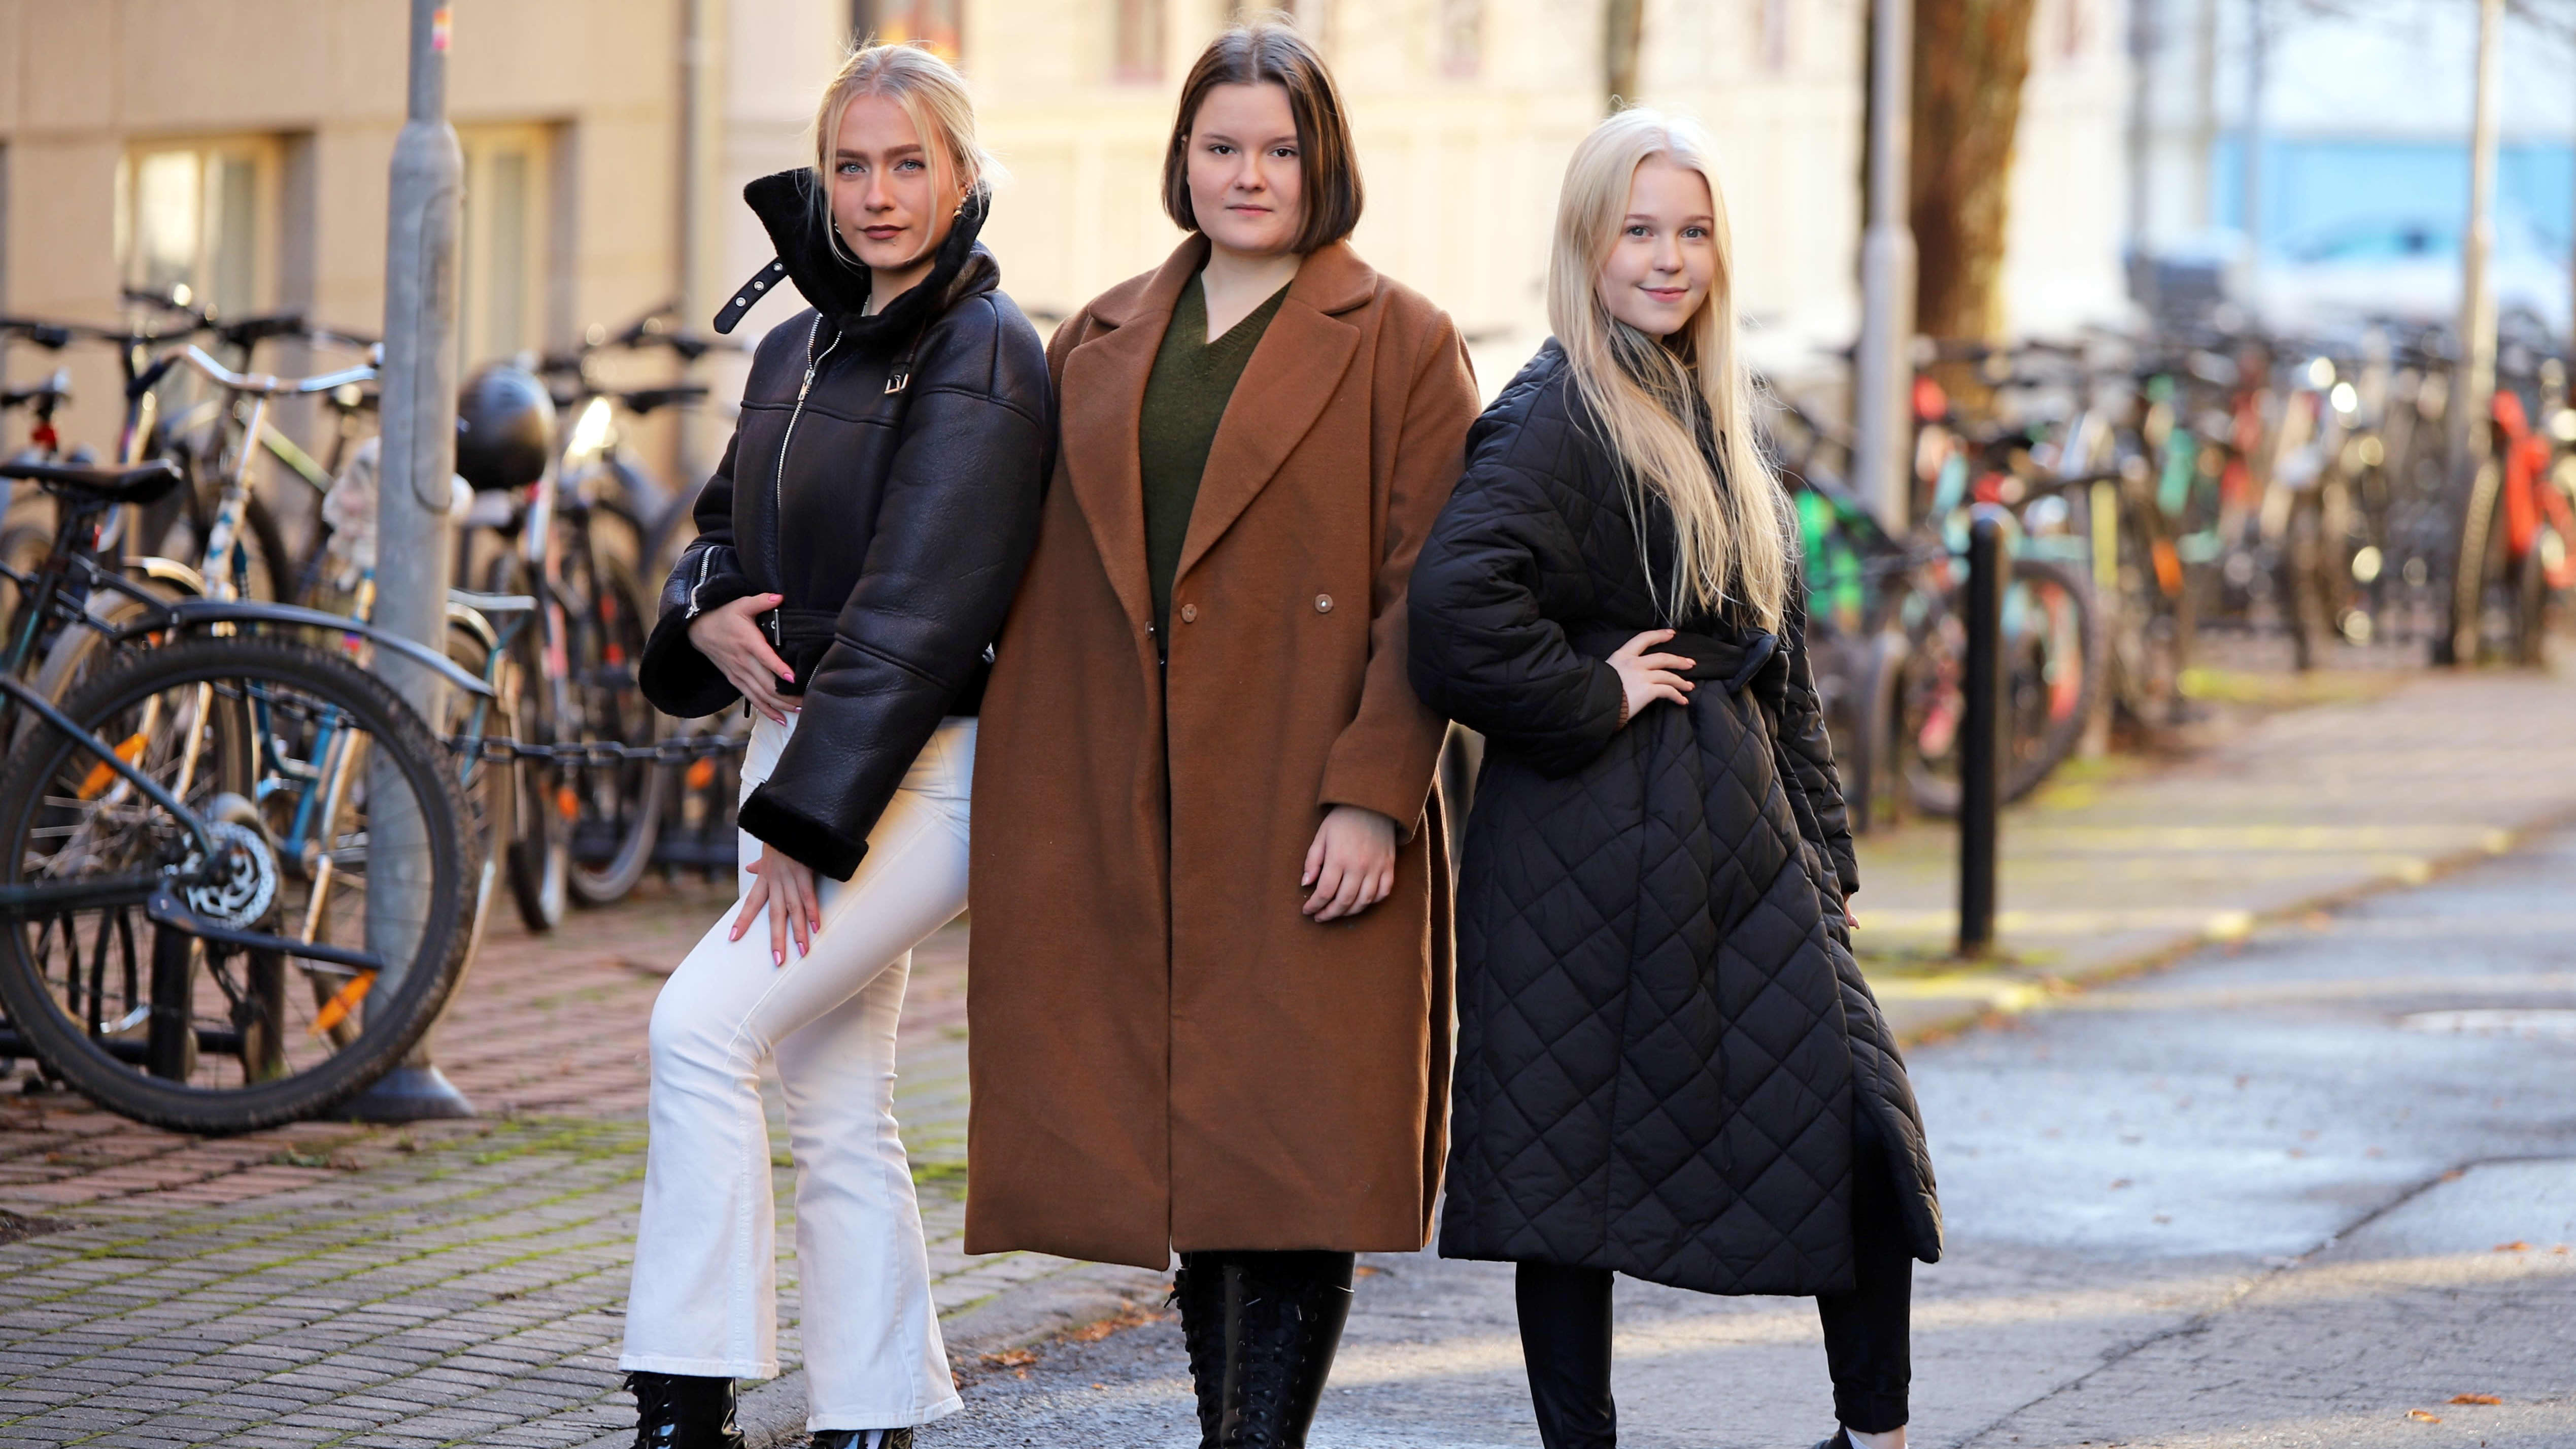 Elisa Sairanen, Johanna Lampinen ja Siiri Kirmanen poseeraavat syysauringossa.